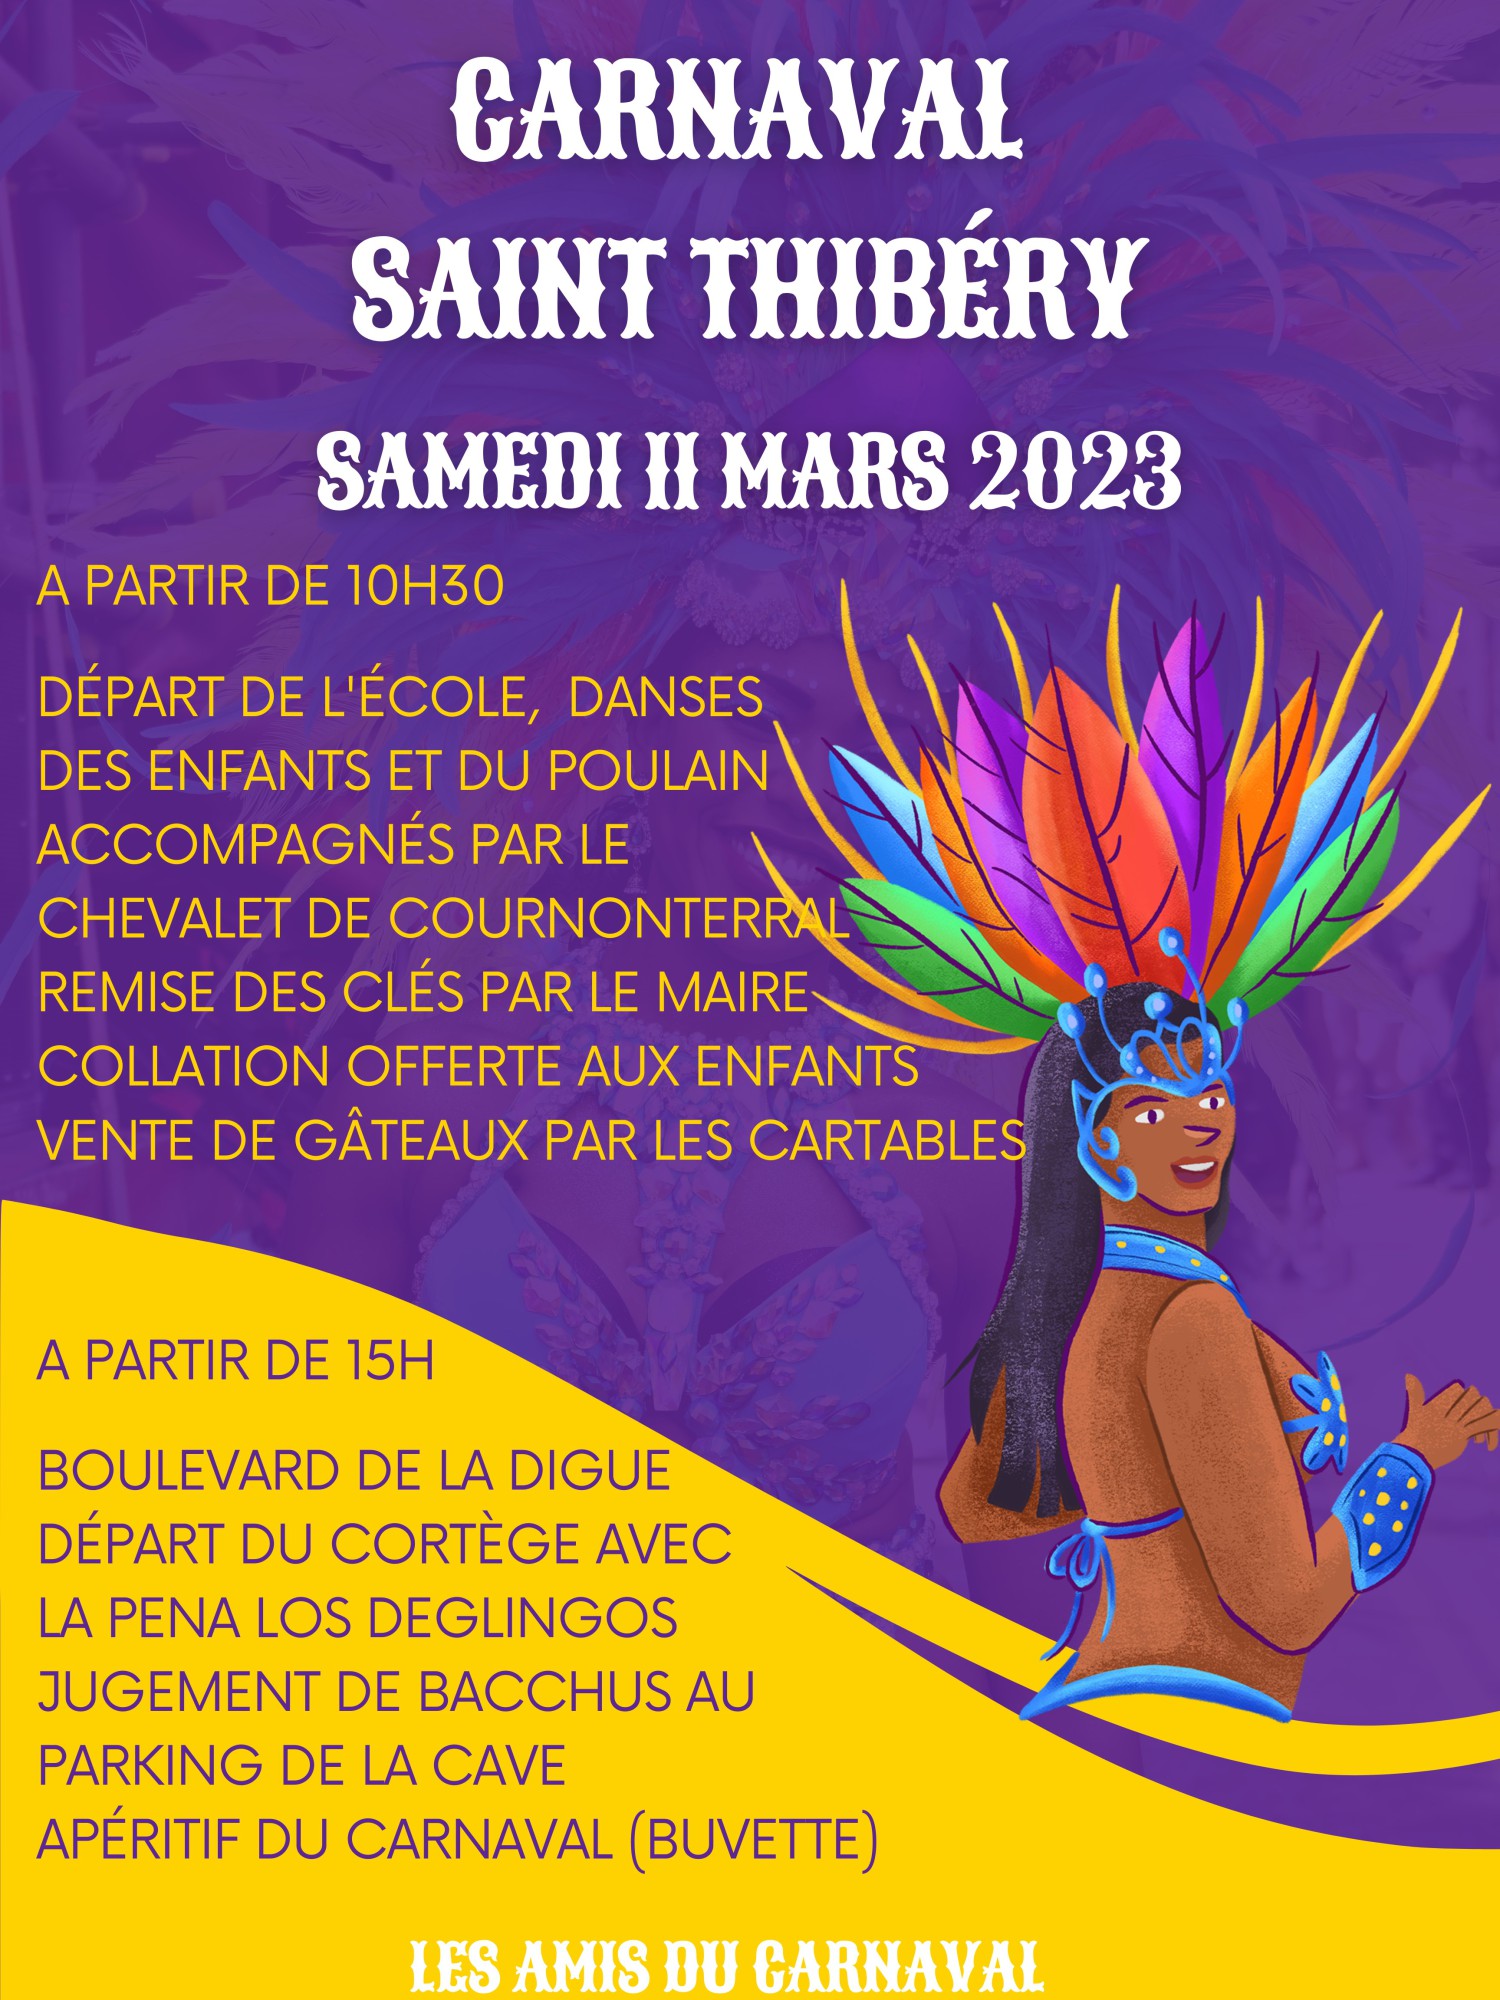 Saint-Thibéry - Le Carnaval de Saint Thibéry c'est samedi 11 mars ! 